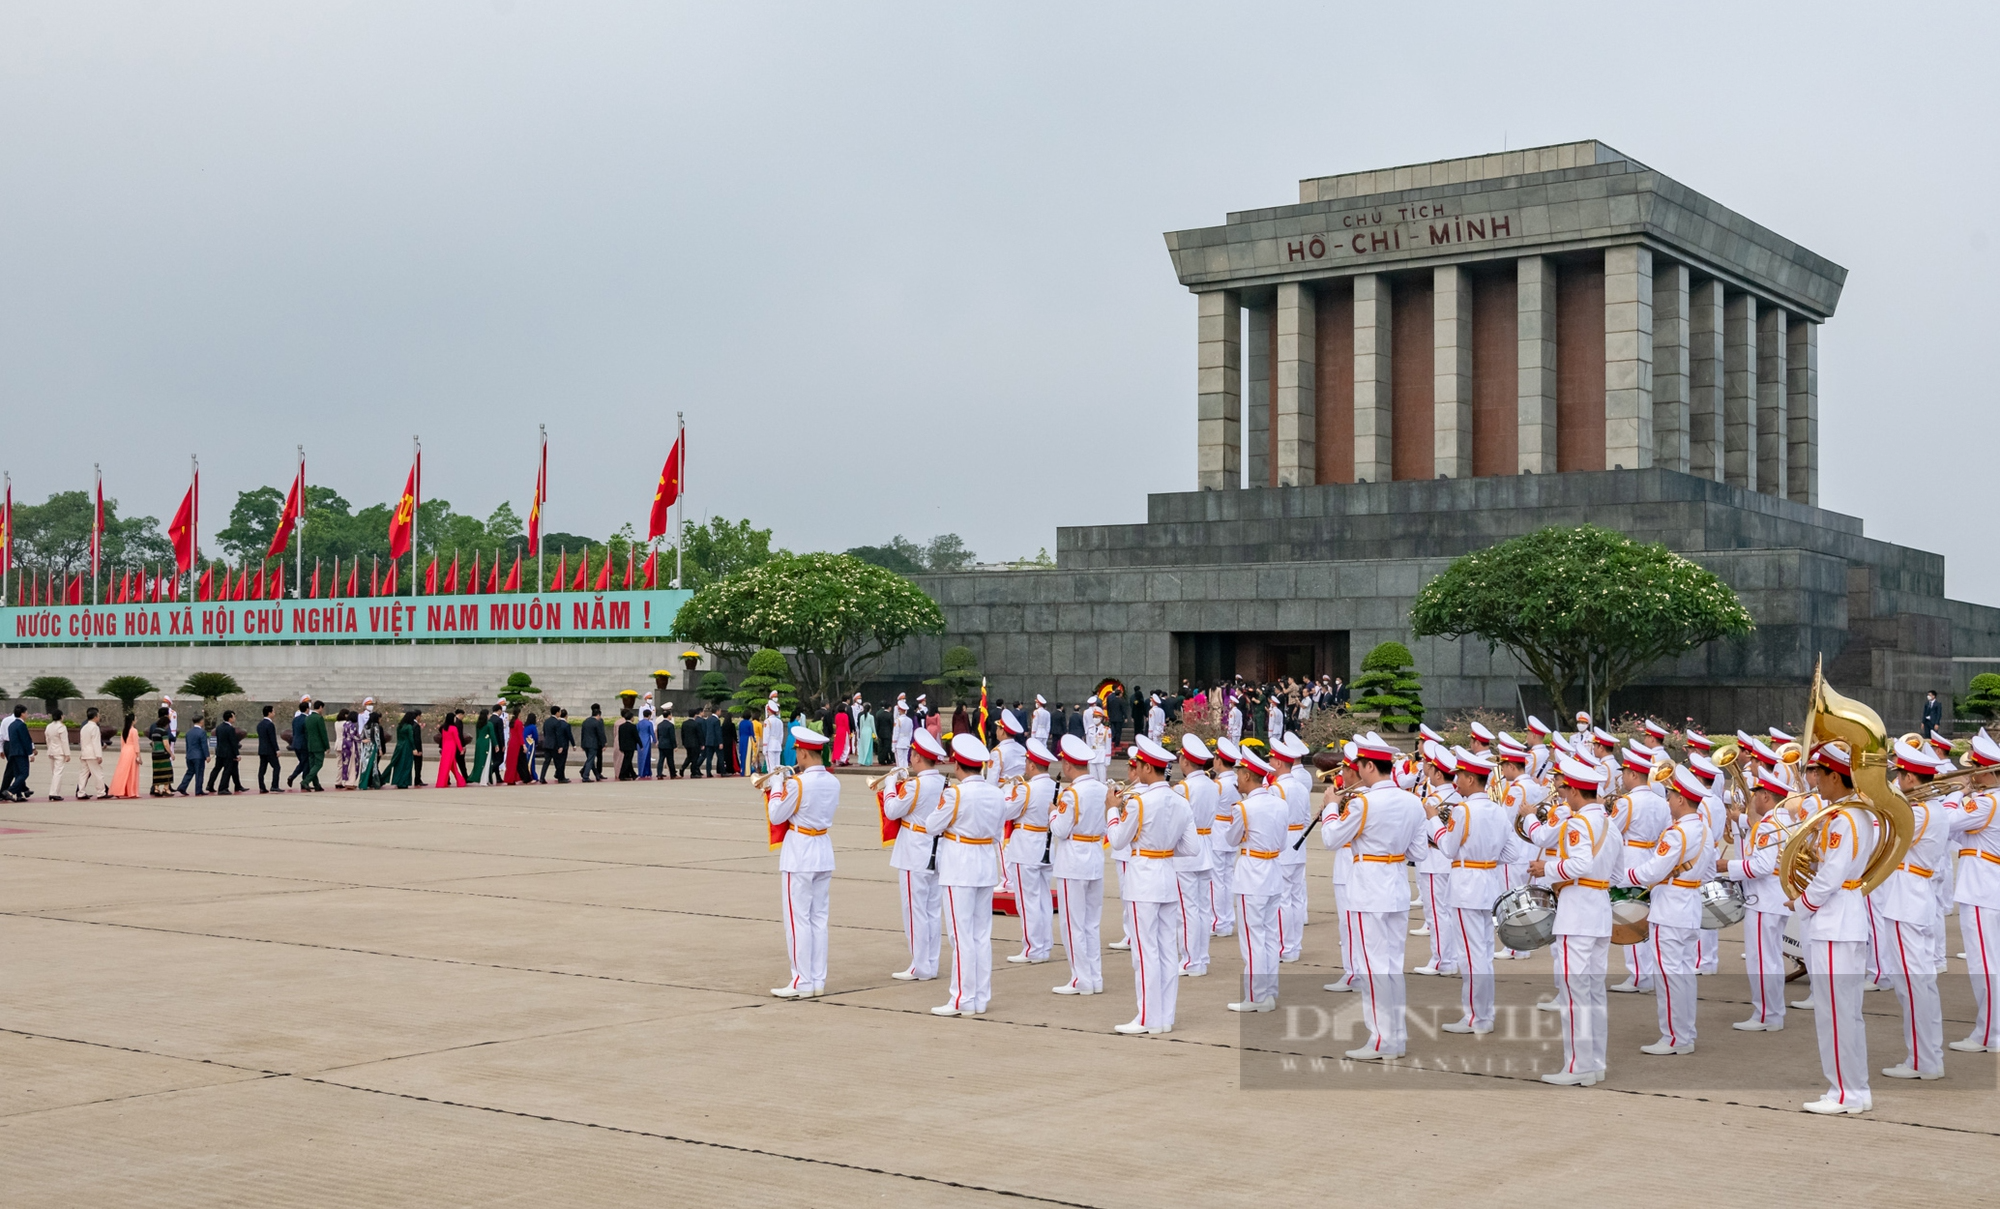 Lãnh đạo Đảng, Nhà nước viếng lăng Bác trước giờ Quốc hội khai mạc Kỳ họp 5 - Ảnh 1.